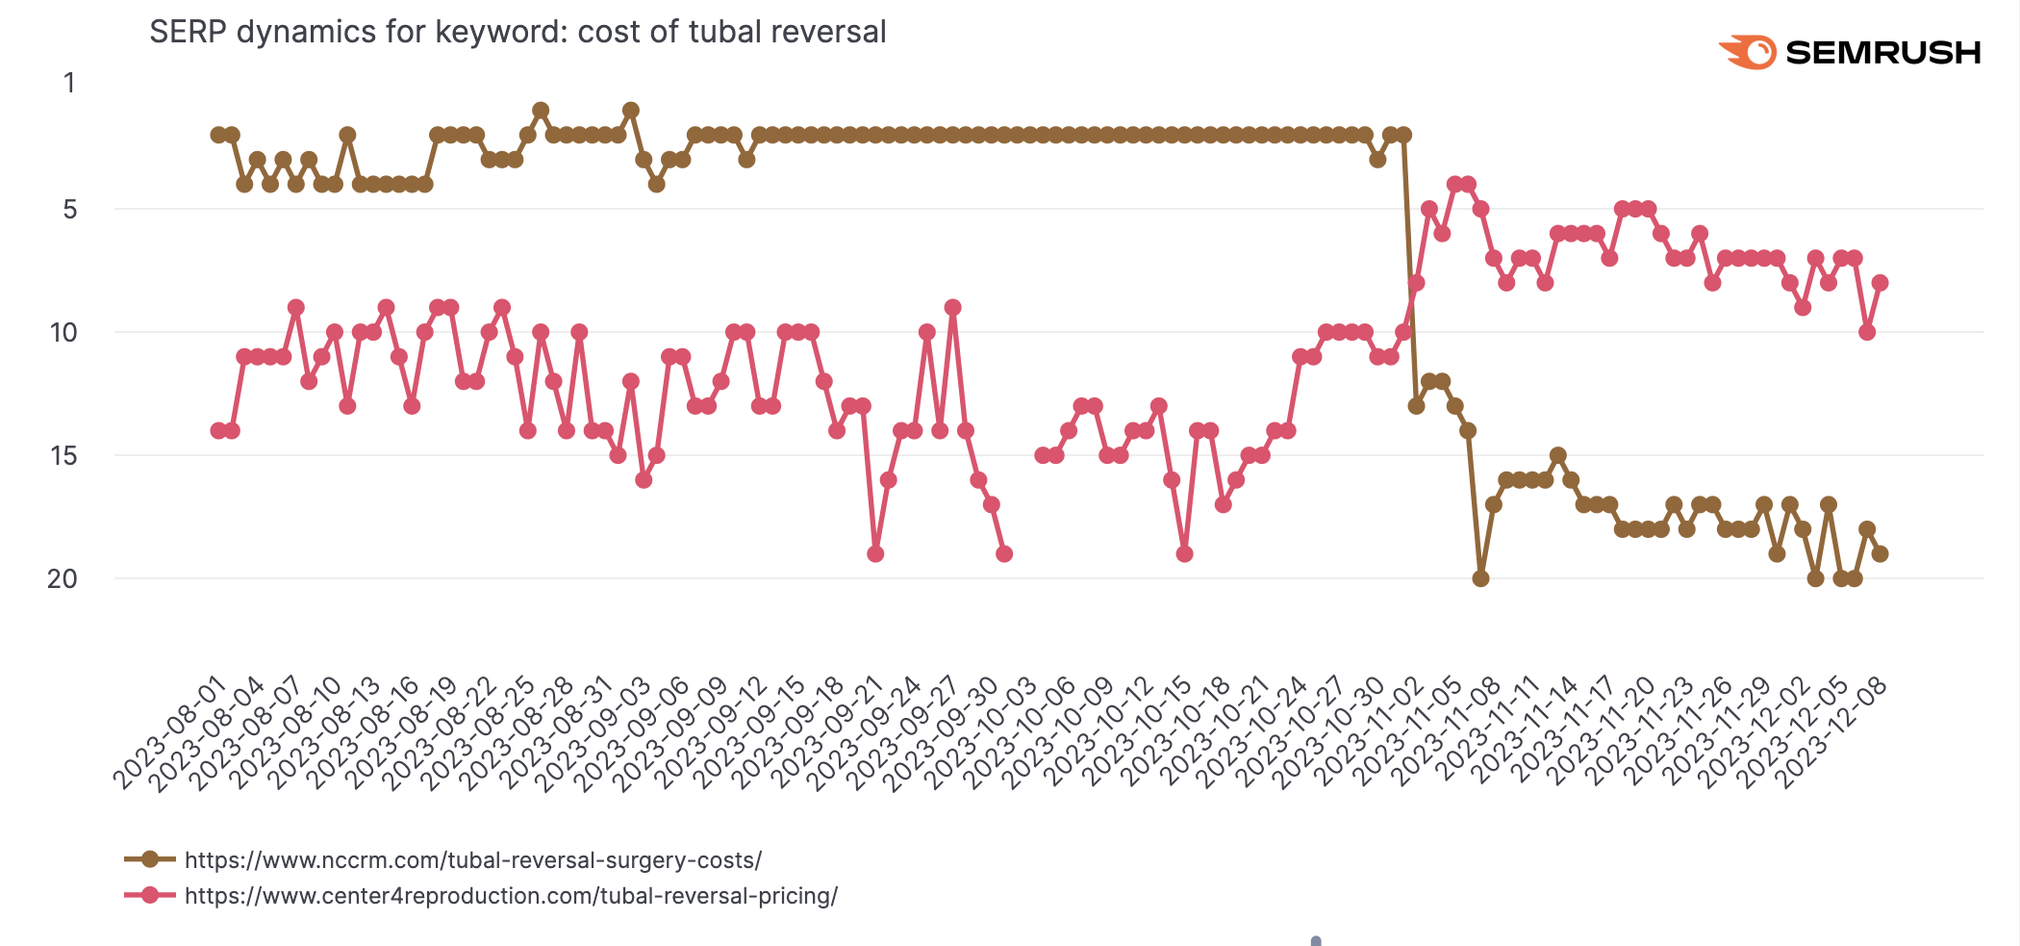 SERP dynamics for keywords: cost of tubal reversal